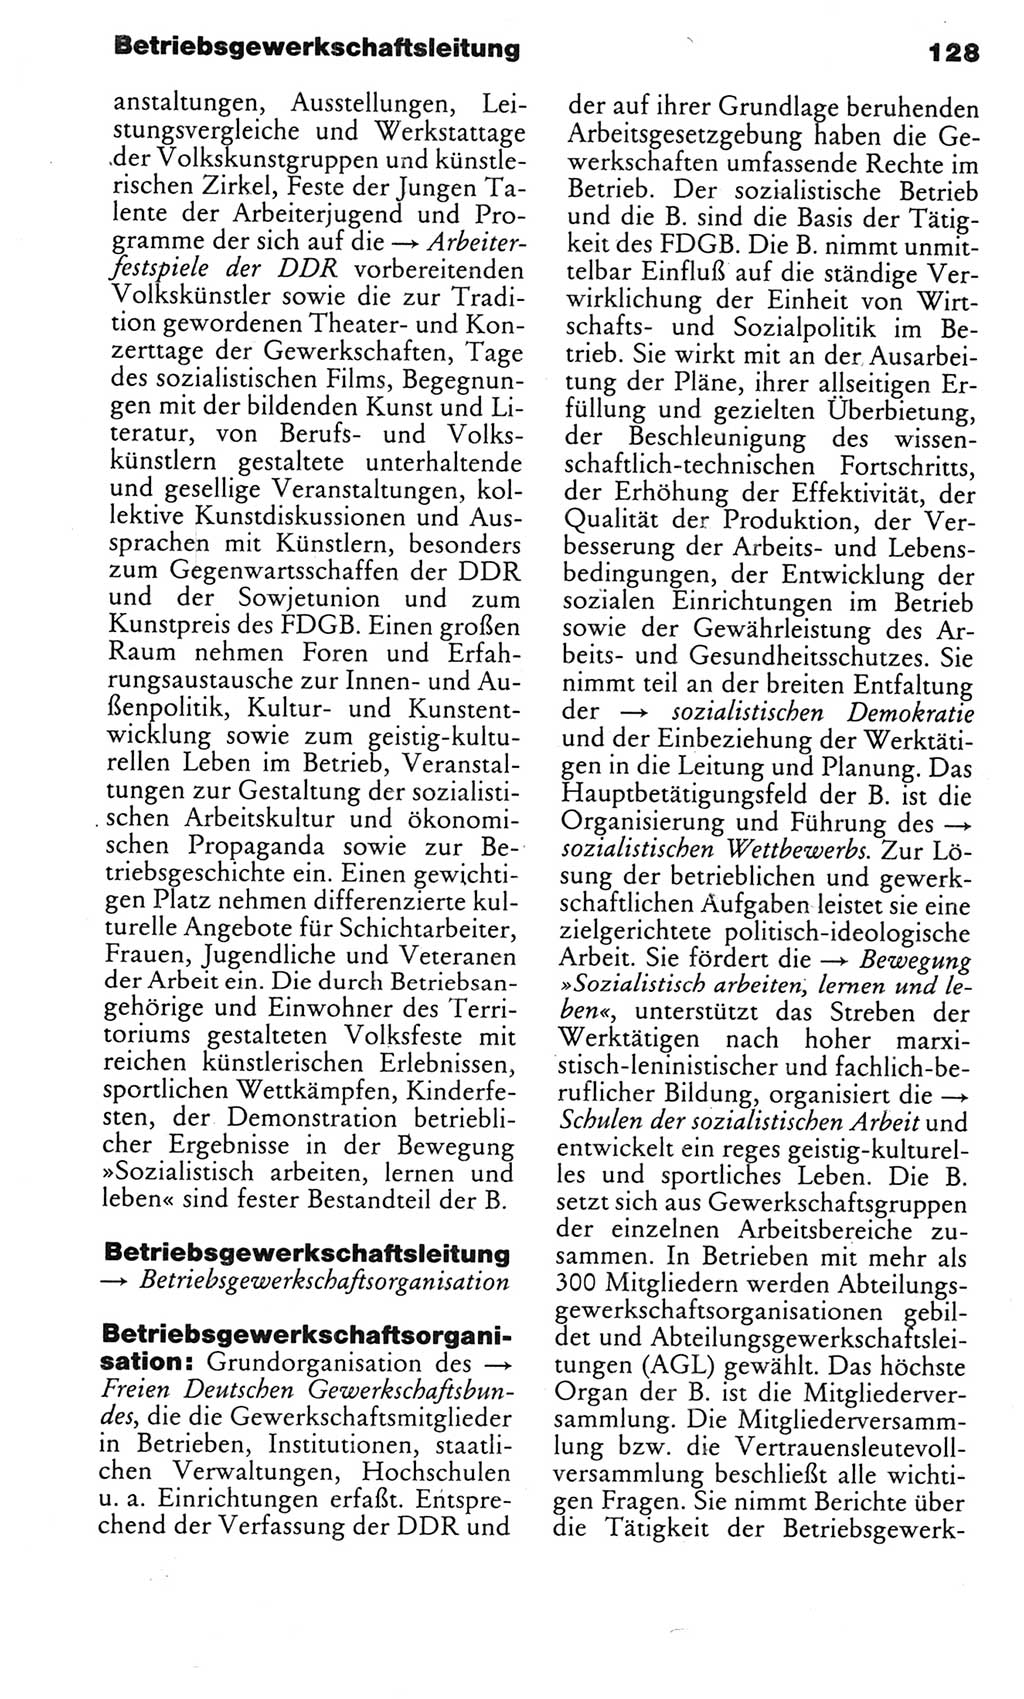 Kleines politisches Wörterbuch [Deutsche Demokratische Republik (DDR)] 1985, Seite 128 (Kl. pol. Wb. DDR 1985, S. 128)